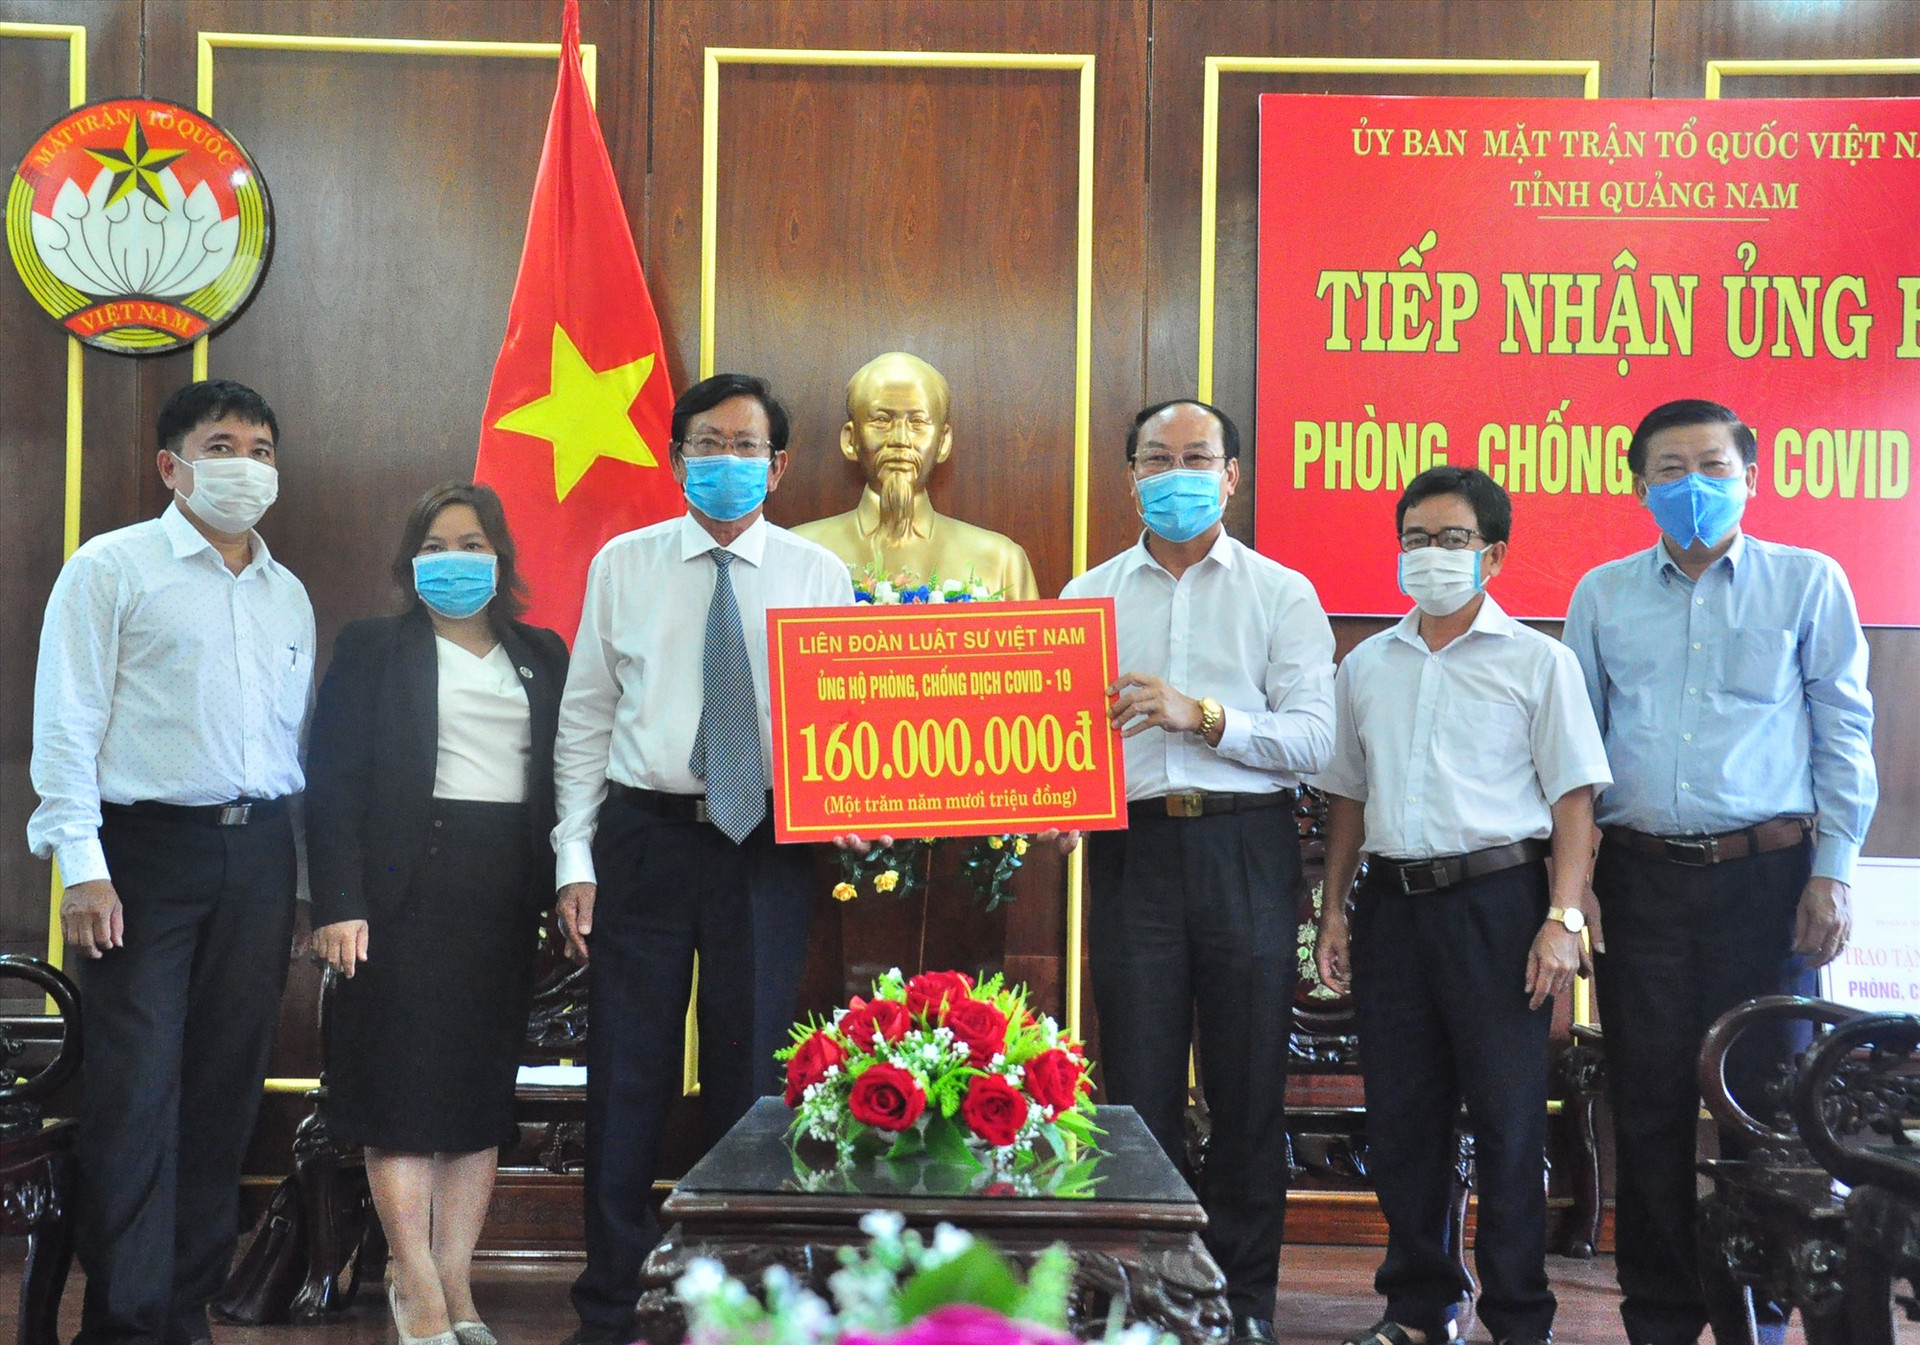 Liên đoàn Luật sư Việt Nam ủng hộ 160 triệu đồng phòng chống dịch. Ảnh: V.A